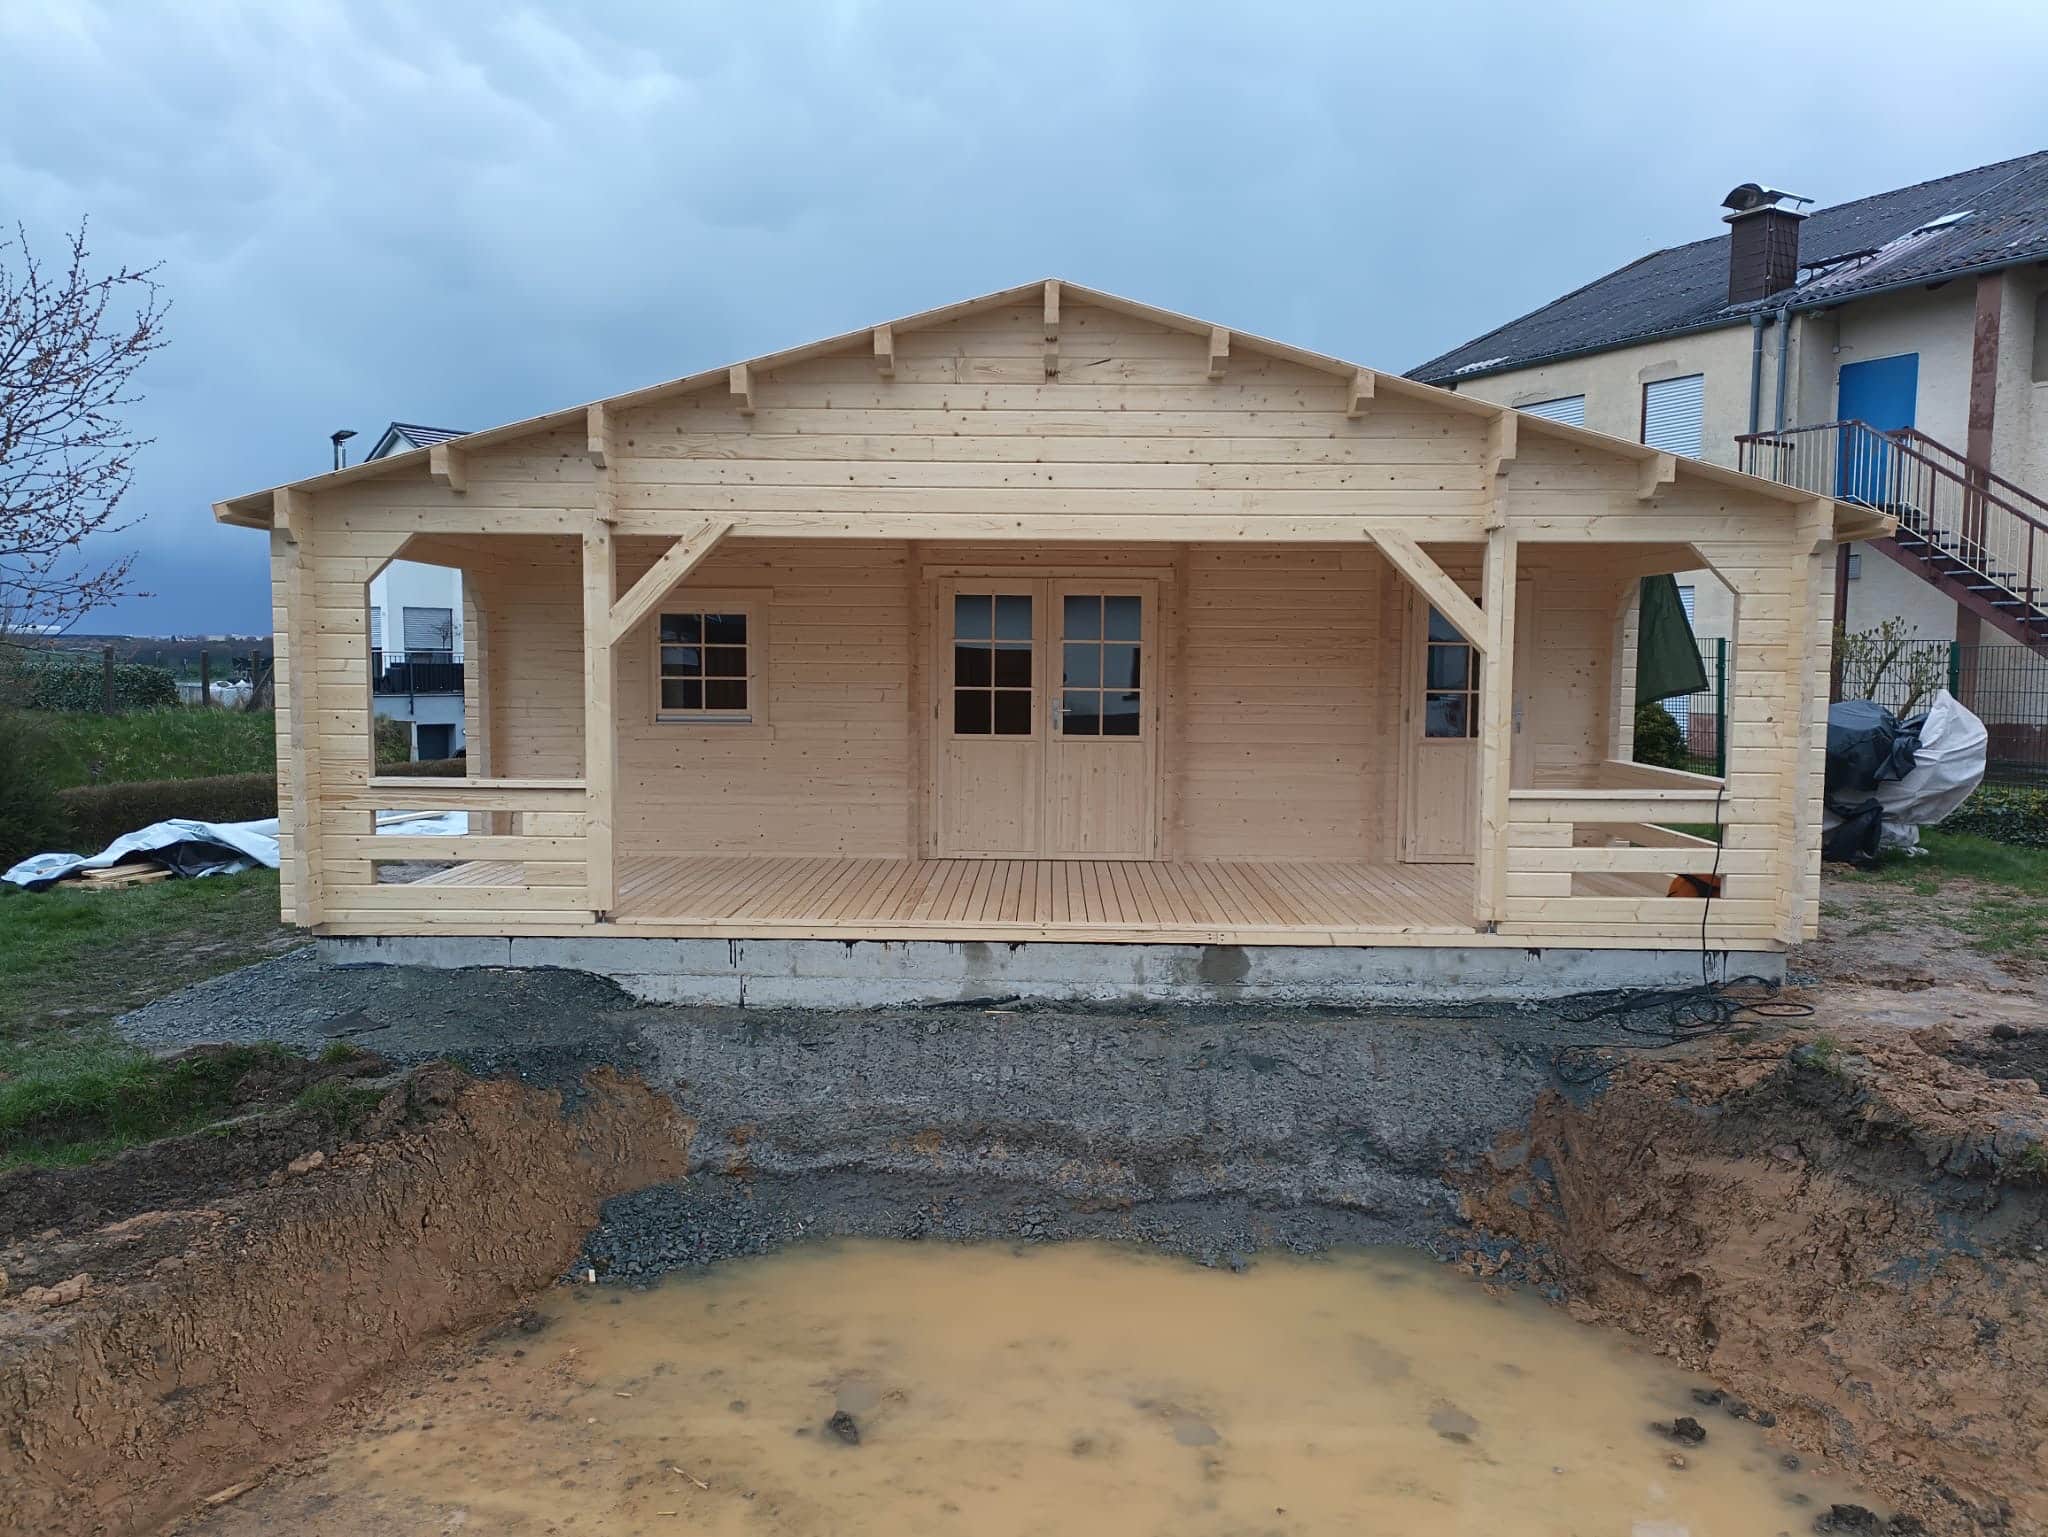 Een nieuw gebouwde houten hut met een overdekte veranda, gelegen op een modderige bouwplaats, onder een bewolkte hemel. De hut, een Tuinhuis Friedland speciale versie, wordt geflankeerd